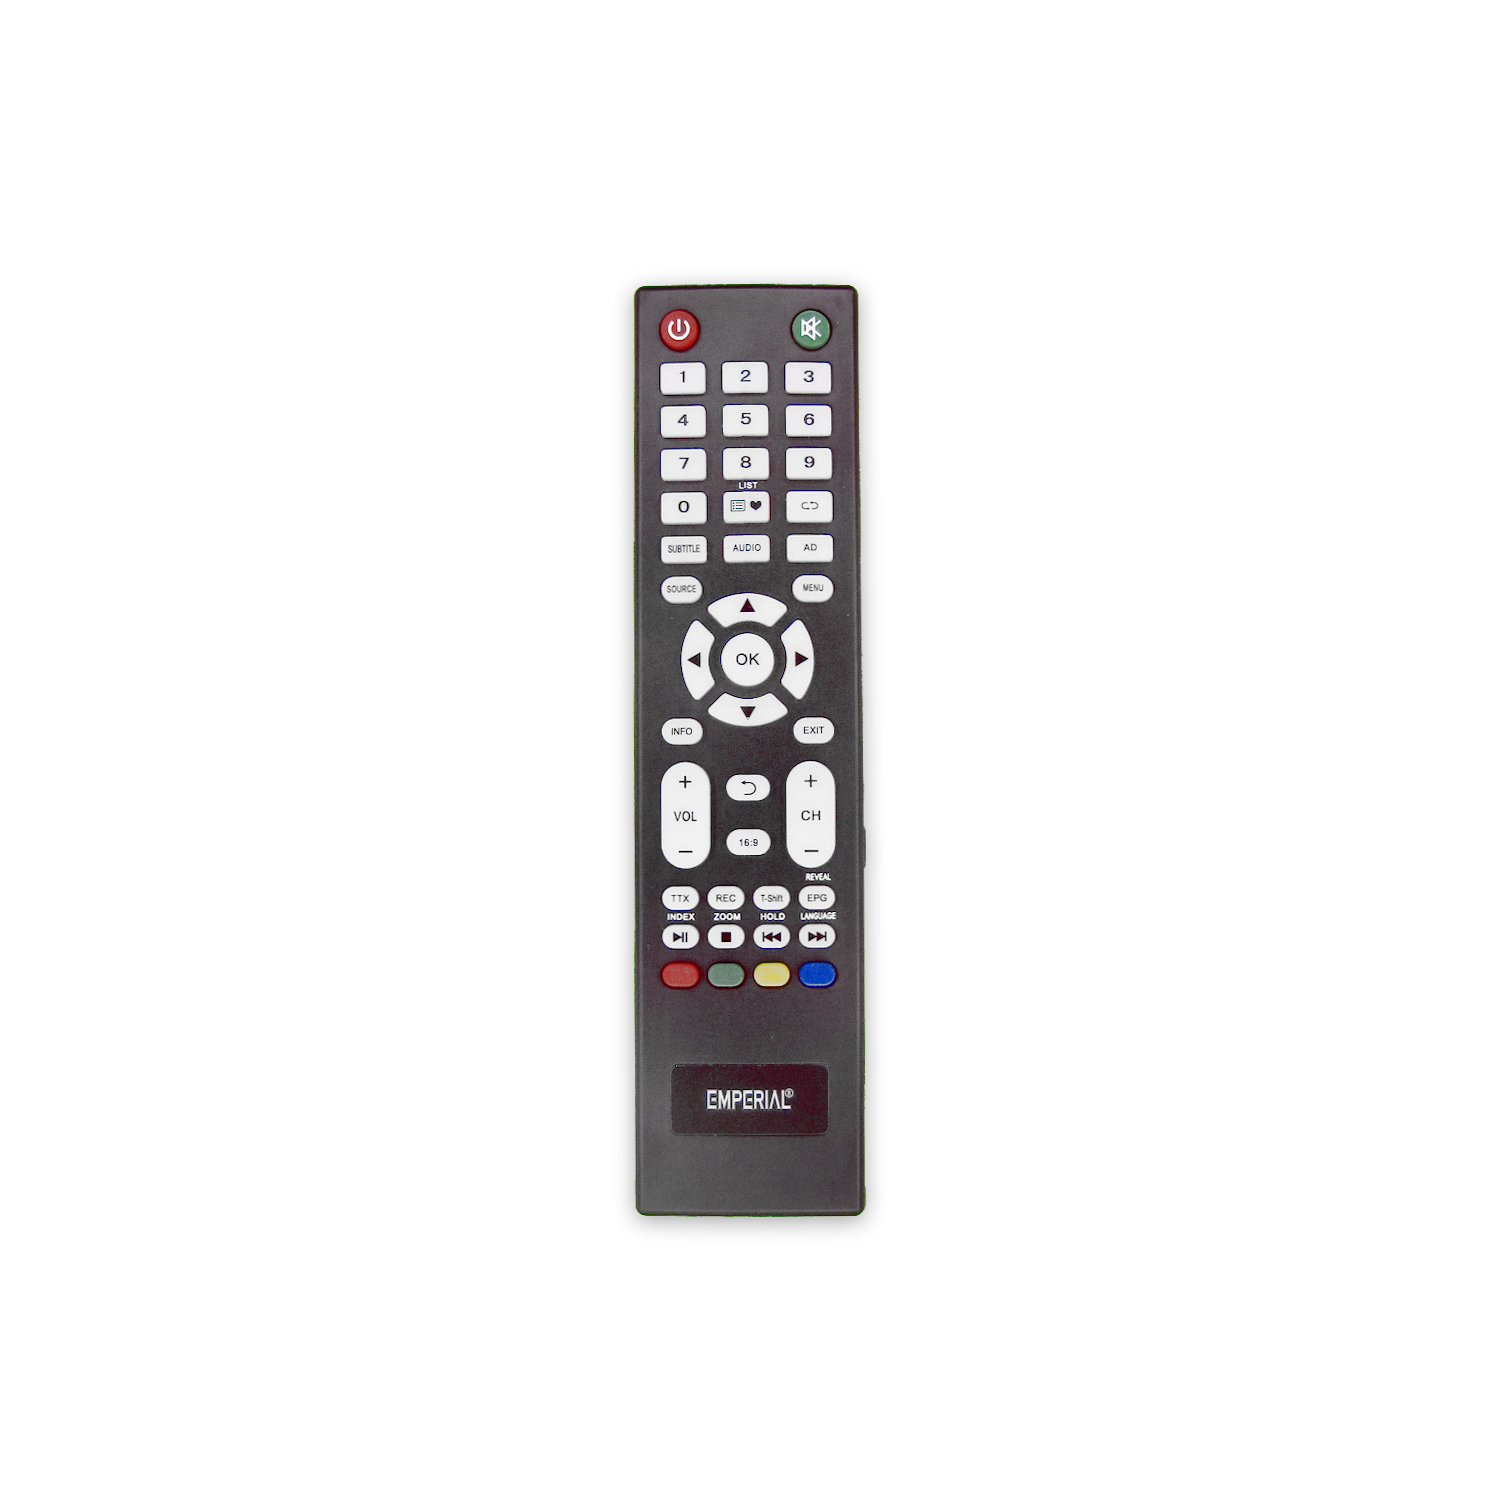  کنترل تلویزیون ال ای دی امپریال EMPERIAL 4k